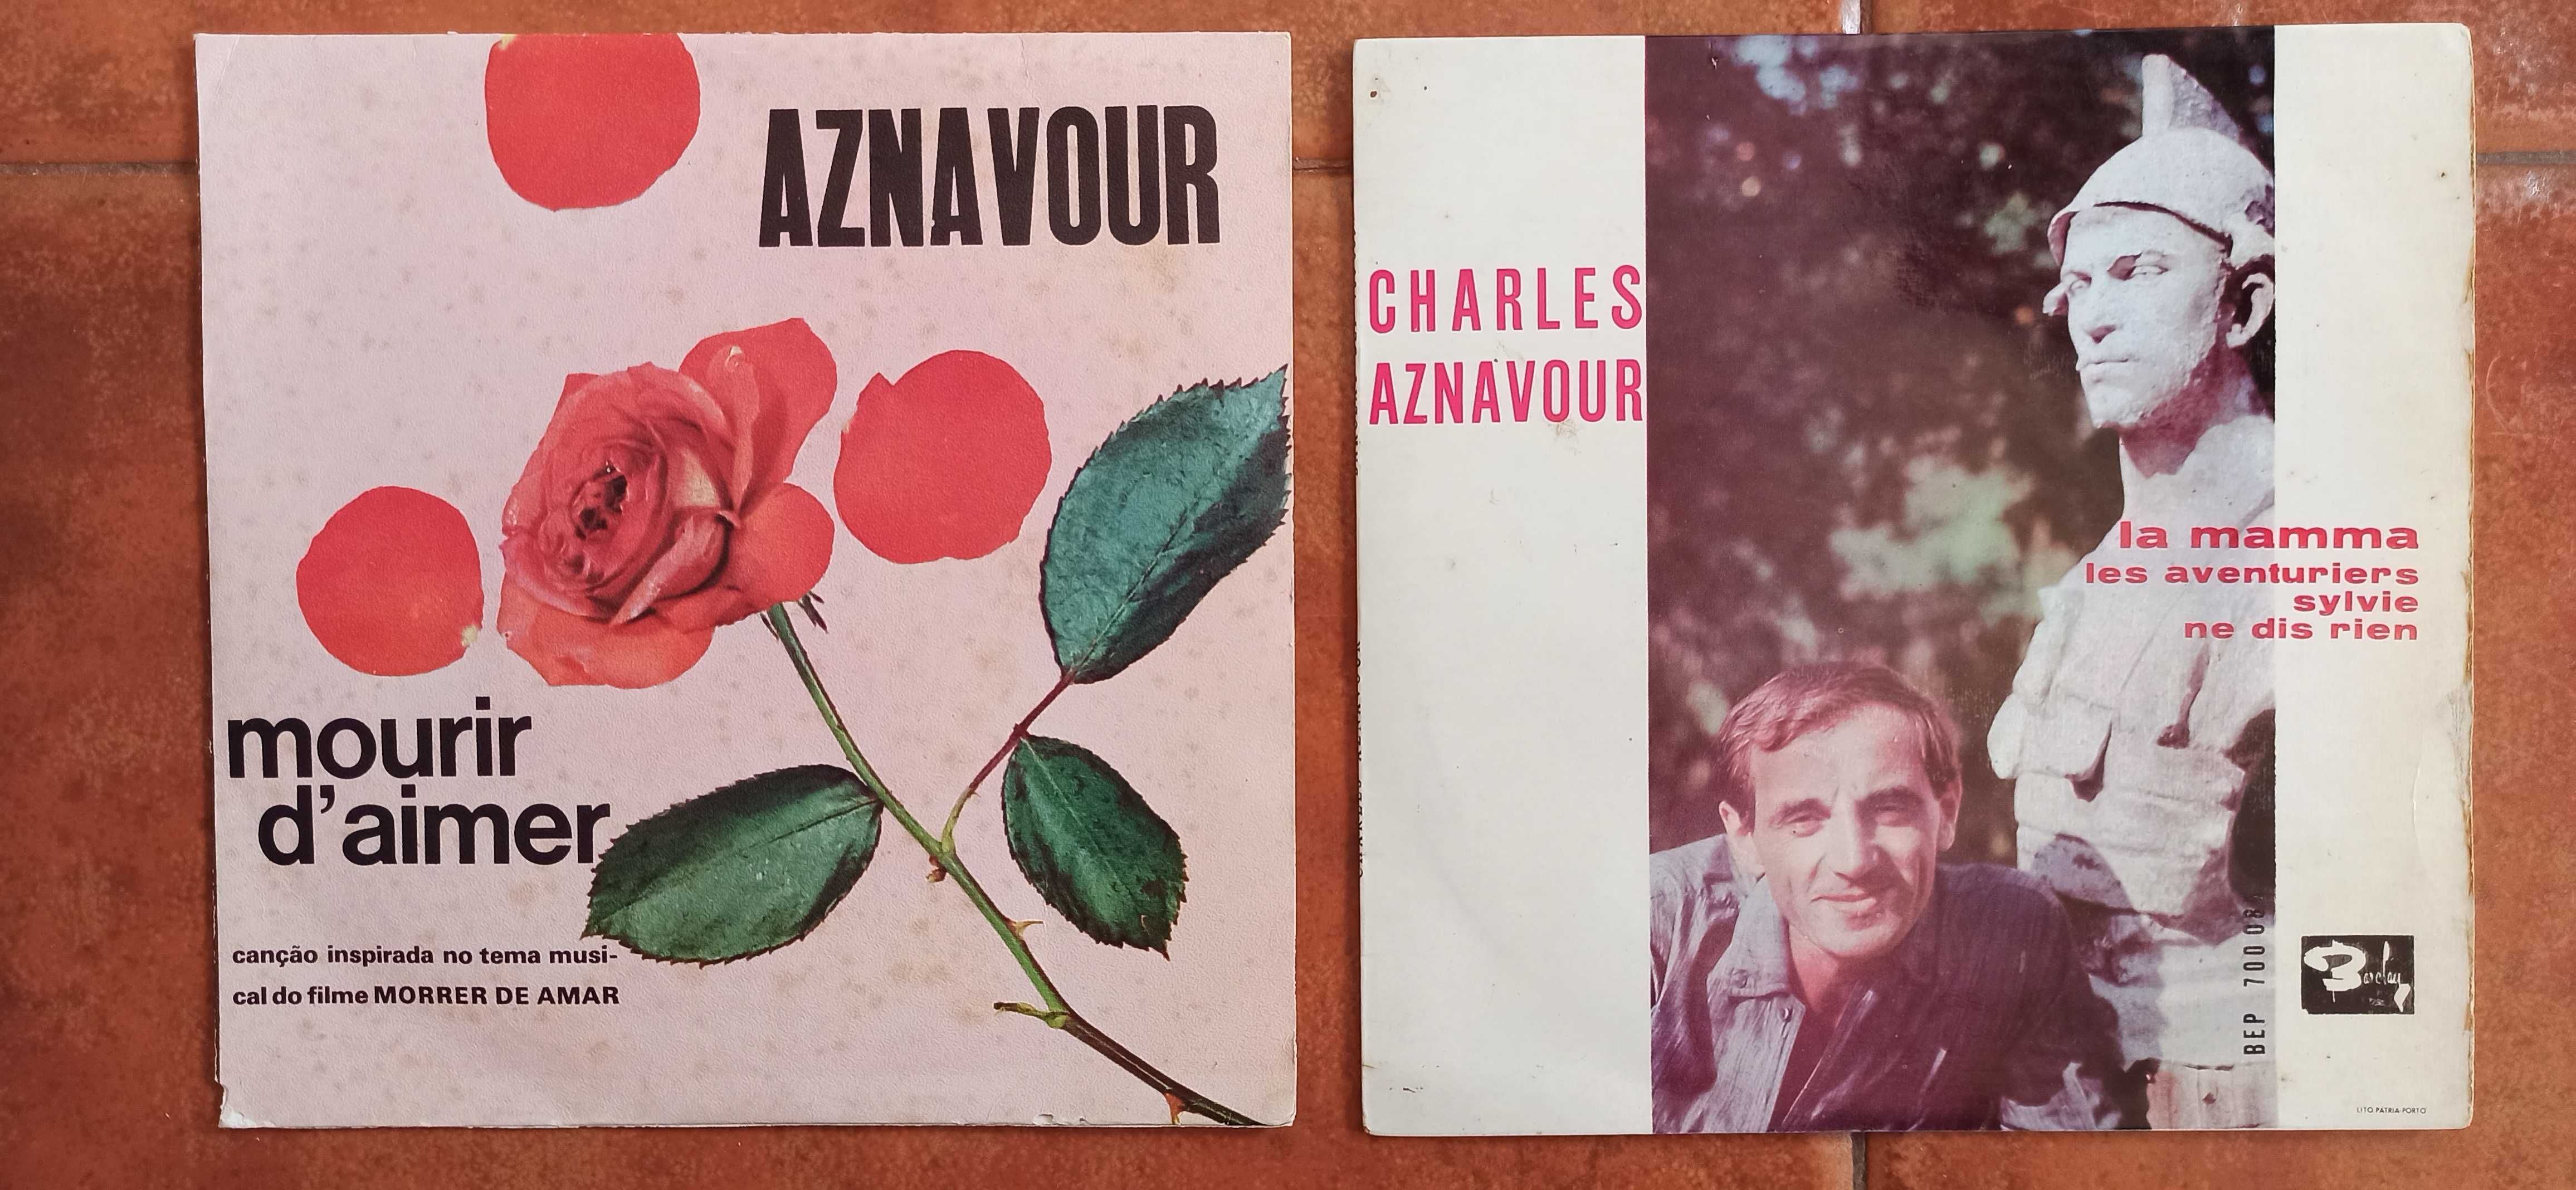 Charles Aznavour - La mamma, Mourir d'aimer, Sylvie, - Discos de vinil